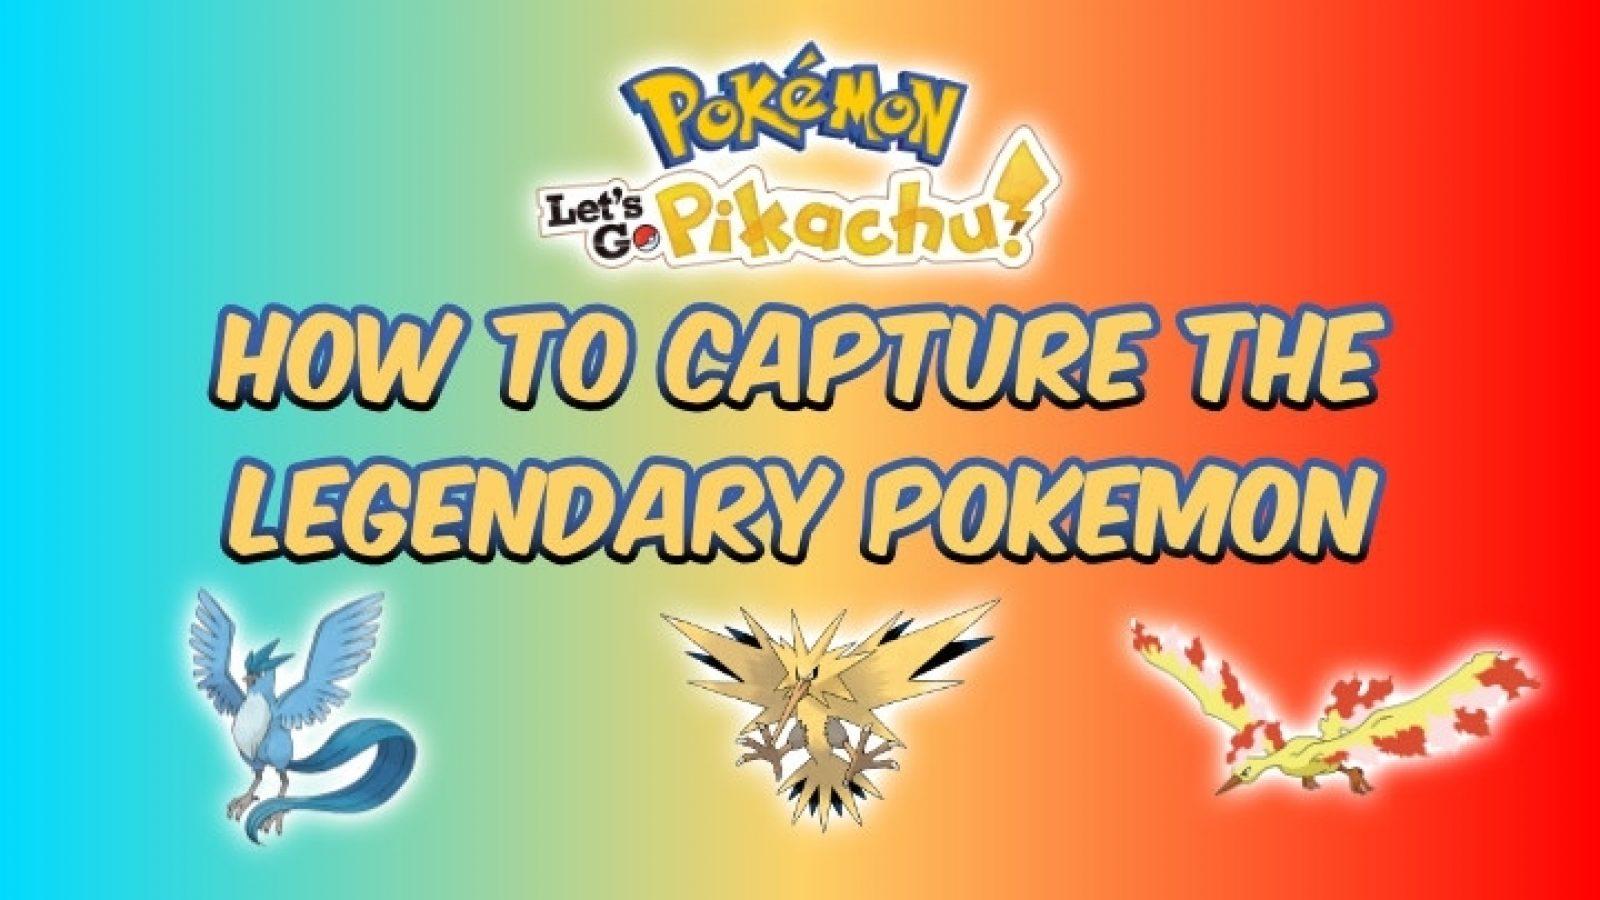 Ten Tips for Catching Legendary Pokémon